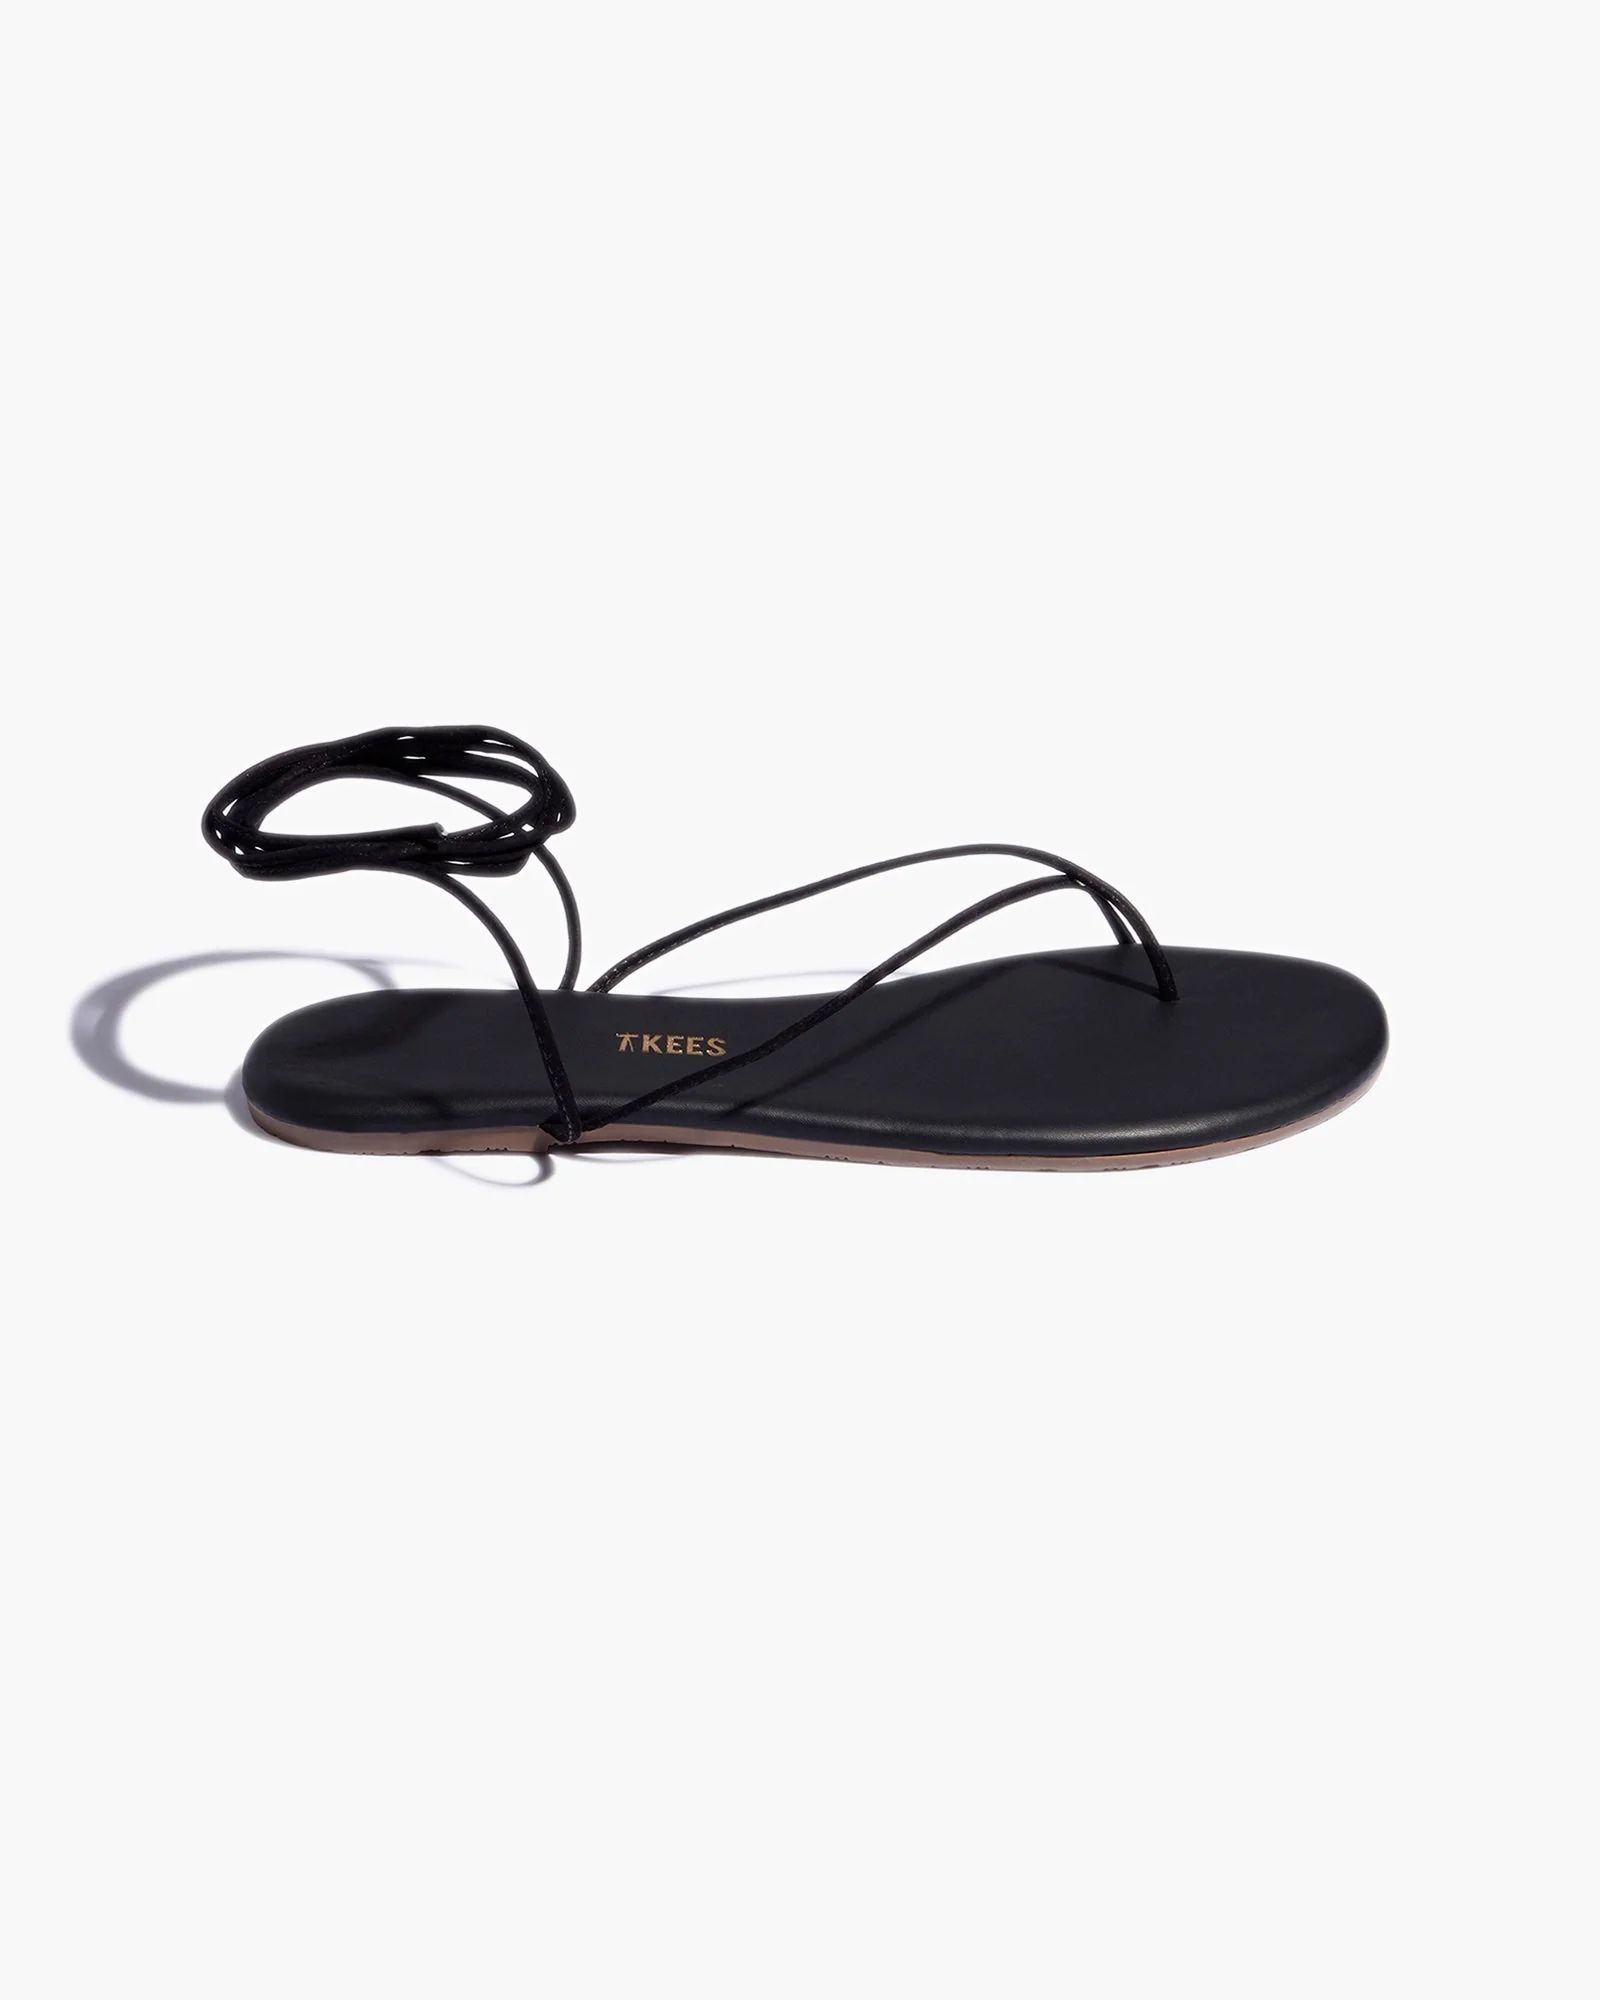 Roe in Bleeker | Sandals | Women's Footwear | TKEES